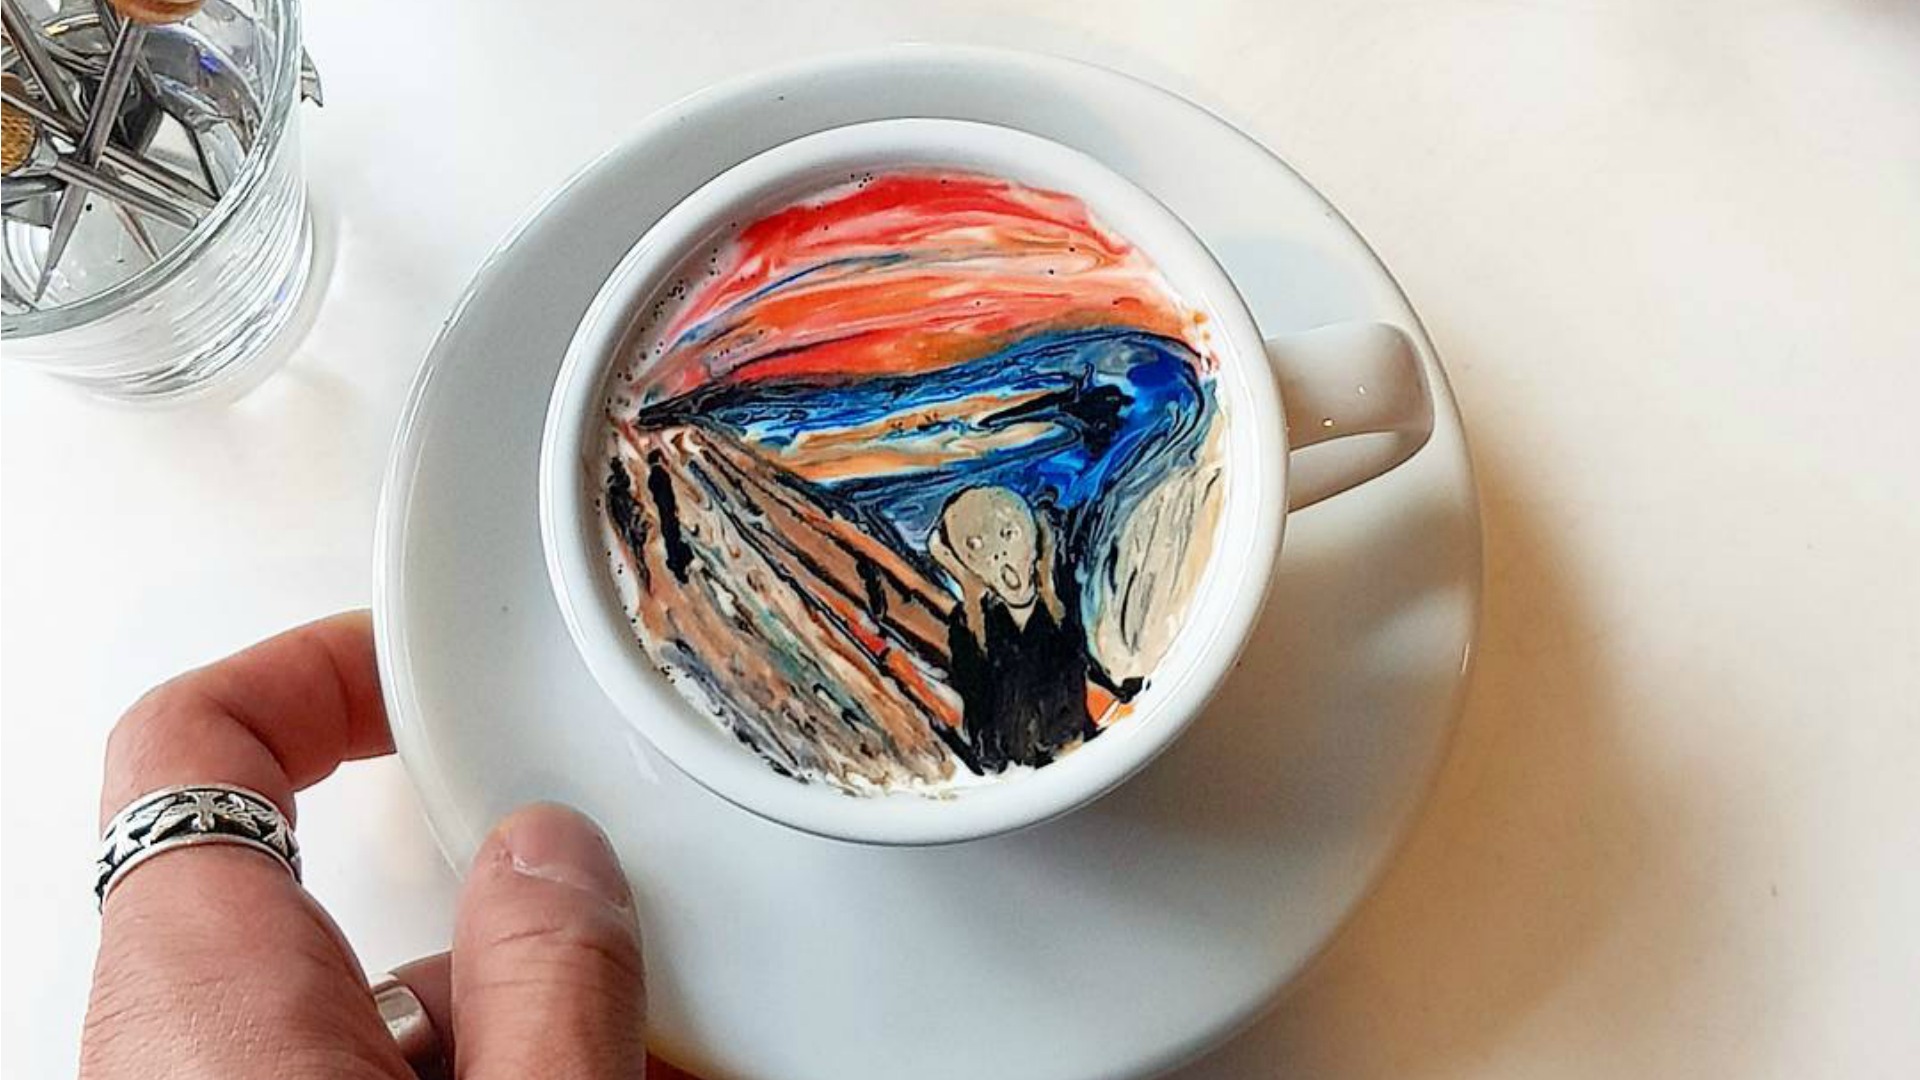 Se llama Kangbin Lee y puede replicar cualquier pintura en tu taza de café